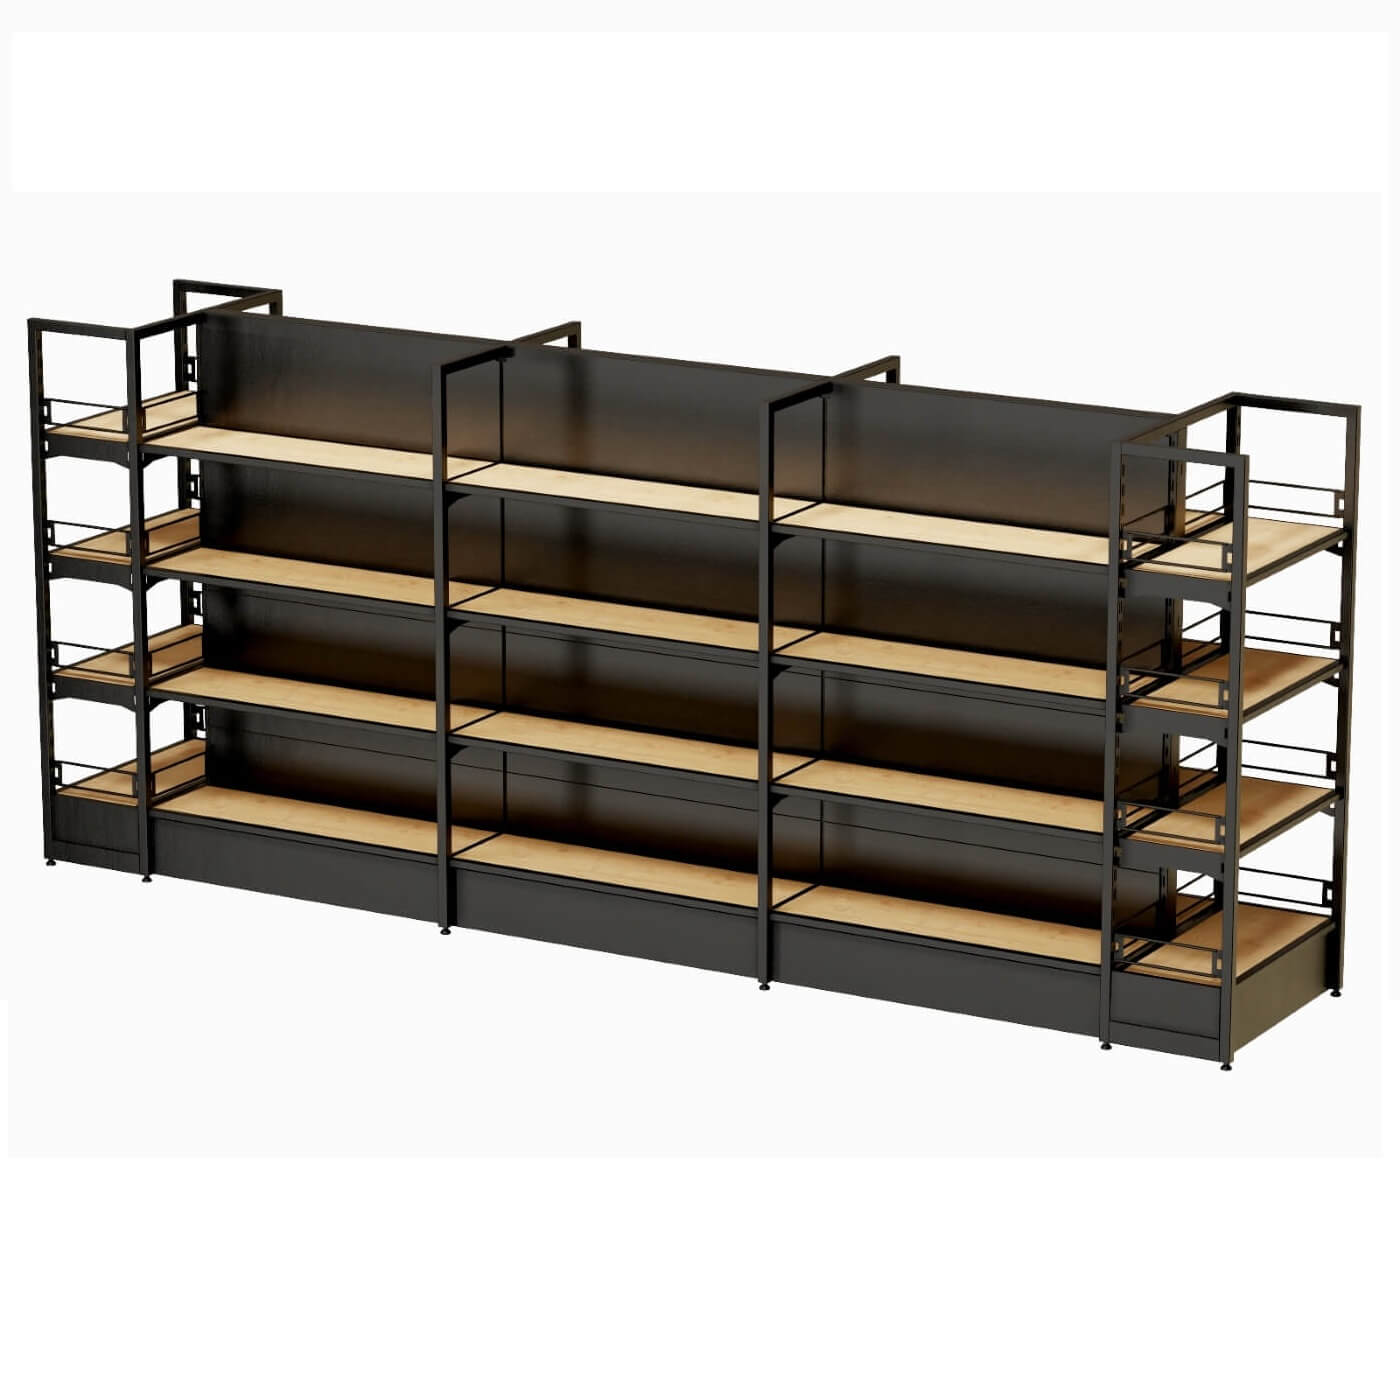 Mittelraumgondel XOR mit schwarzen Metallrückwand und verstärkten Holzfachböden